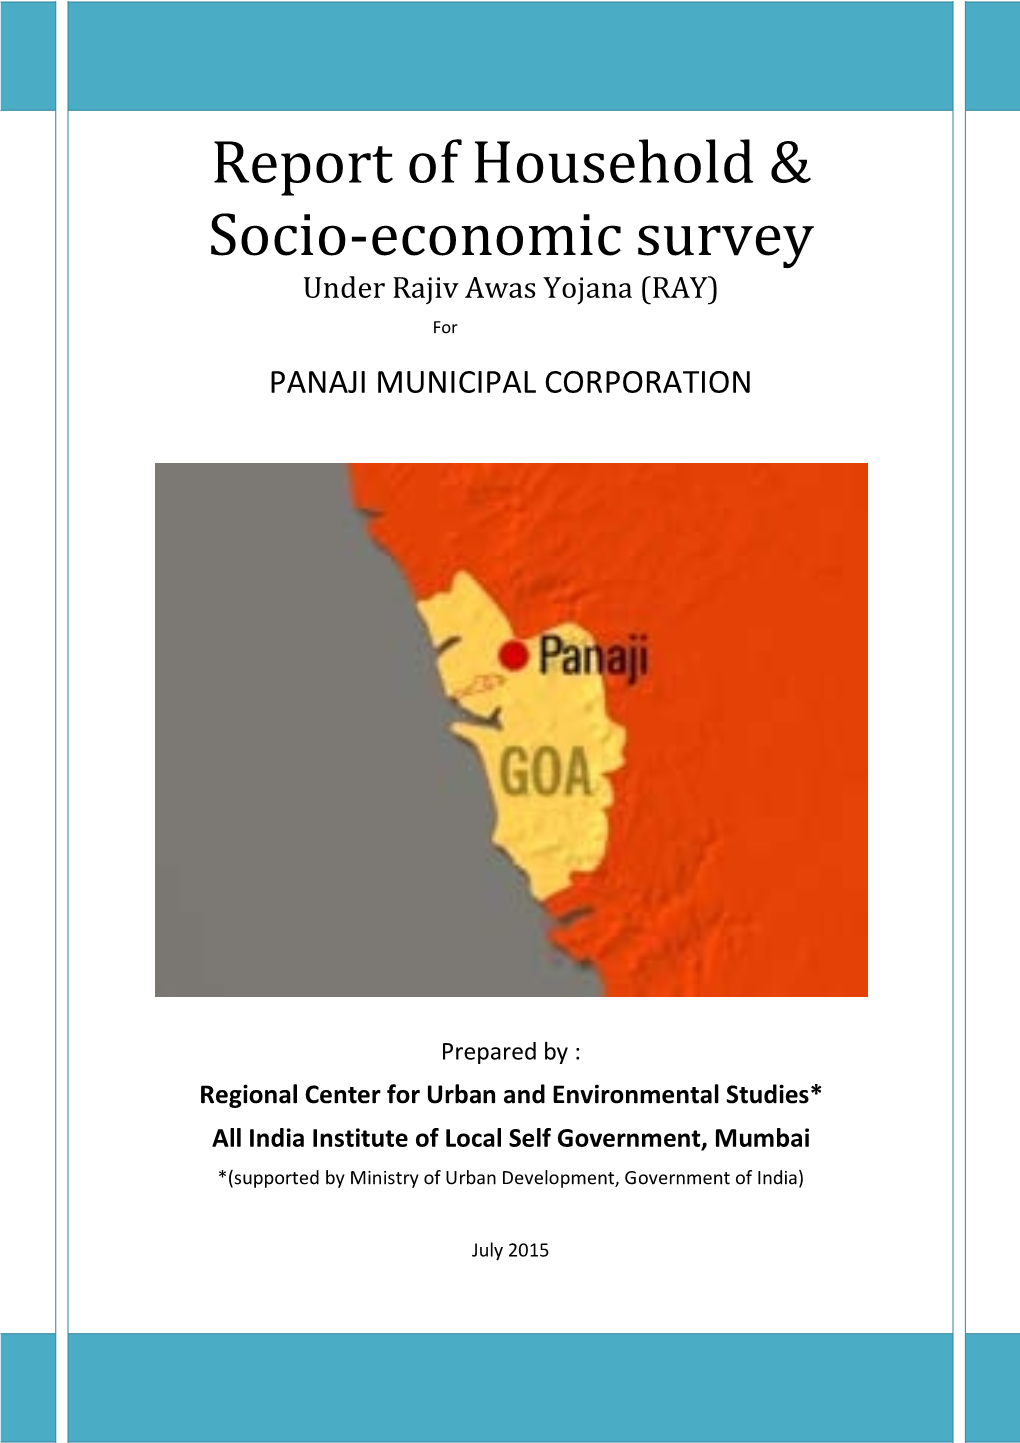 Report of Household & Socio-Economic Survey